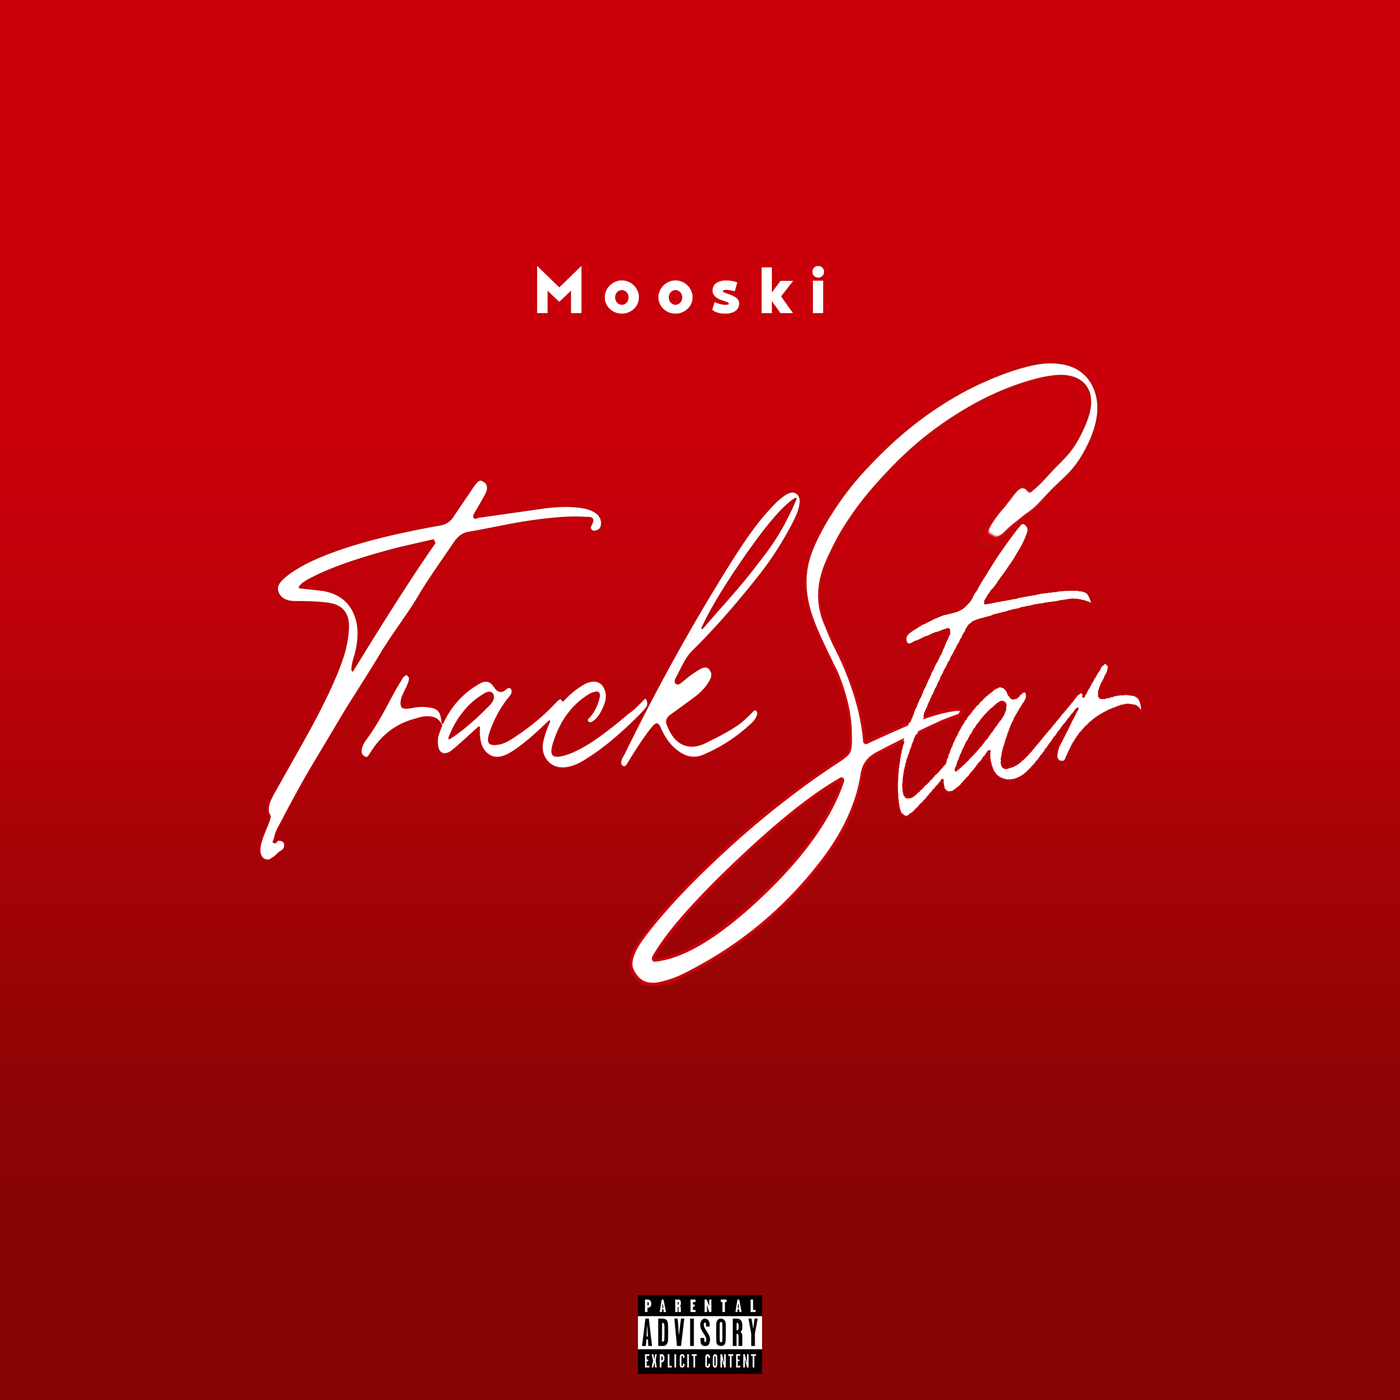 ดาวน์โหลด Mooski - Track Star